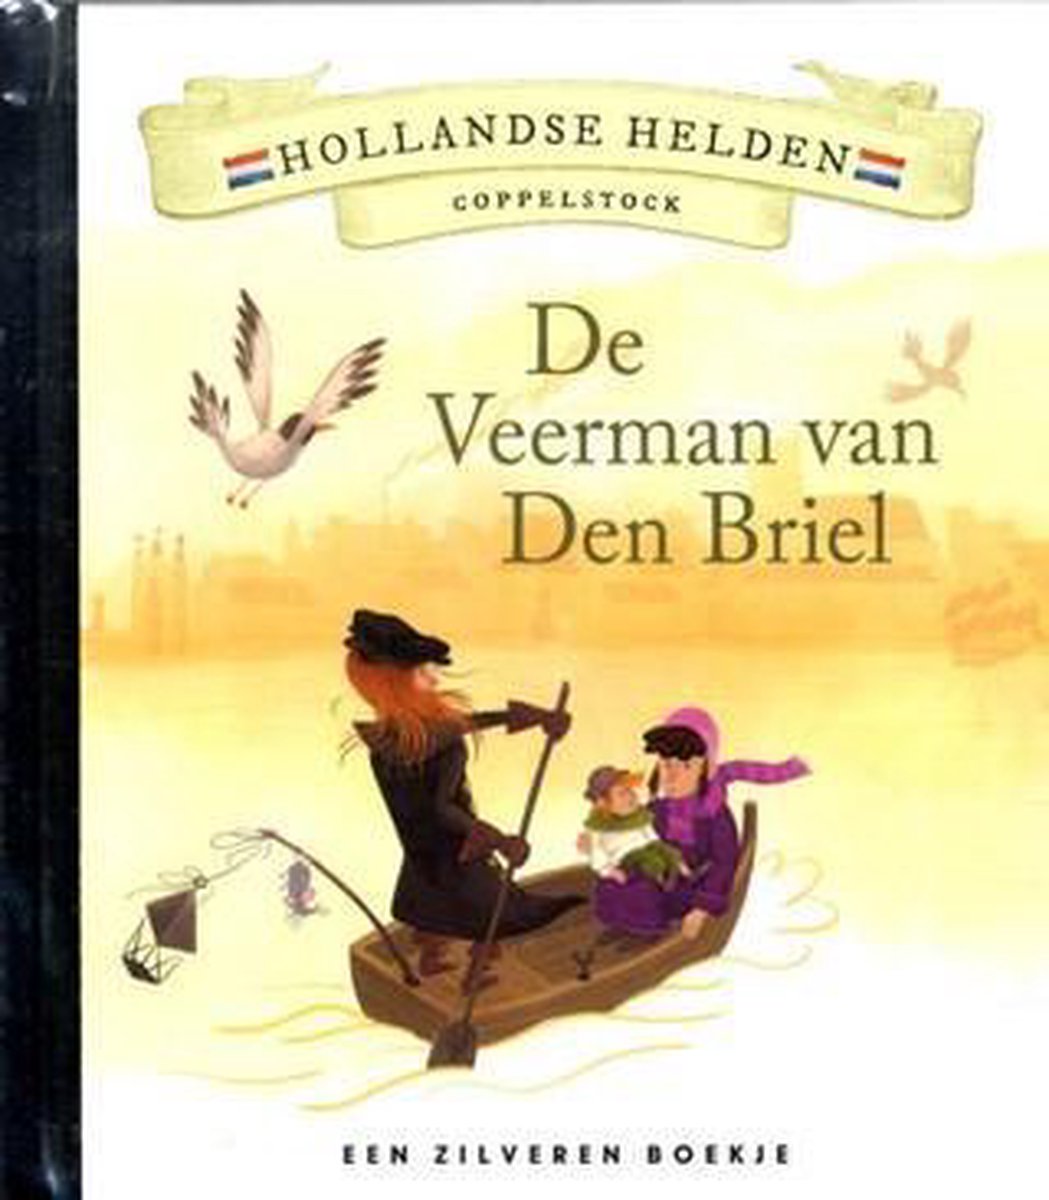 De veerman van Den Briel / Hollandse helden